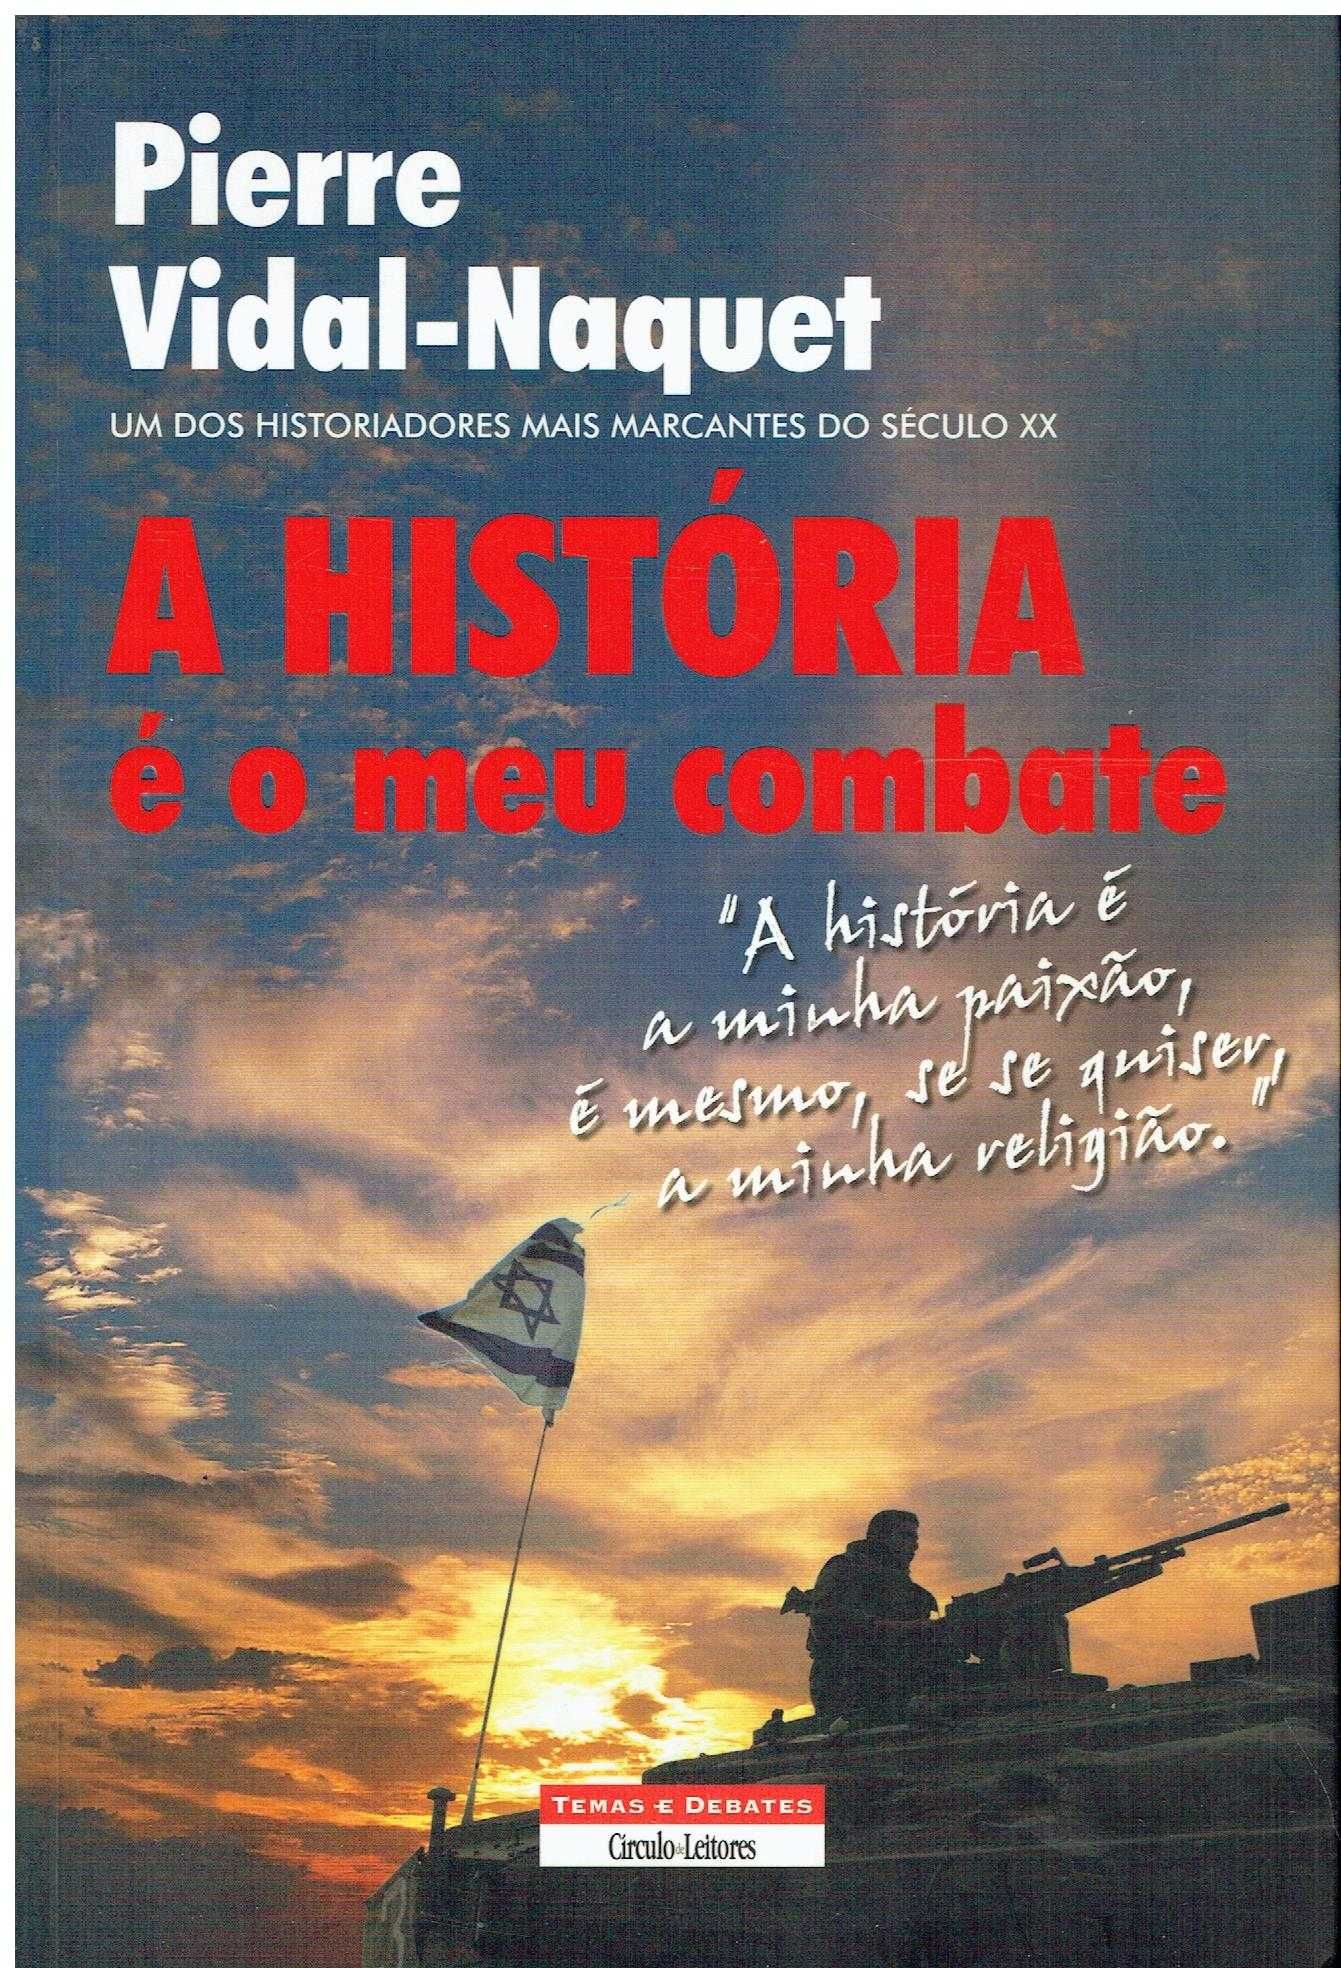 11941

A História é o Meu Combate
de Pierre Vidal-Naquet